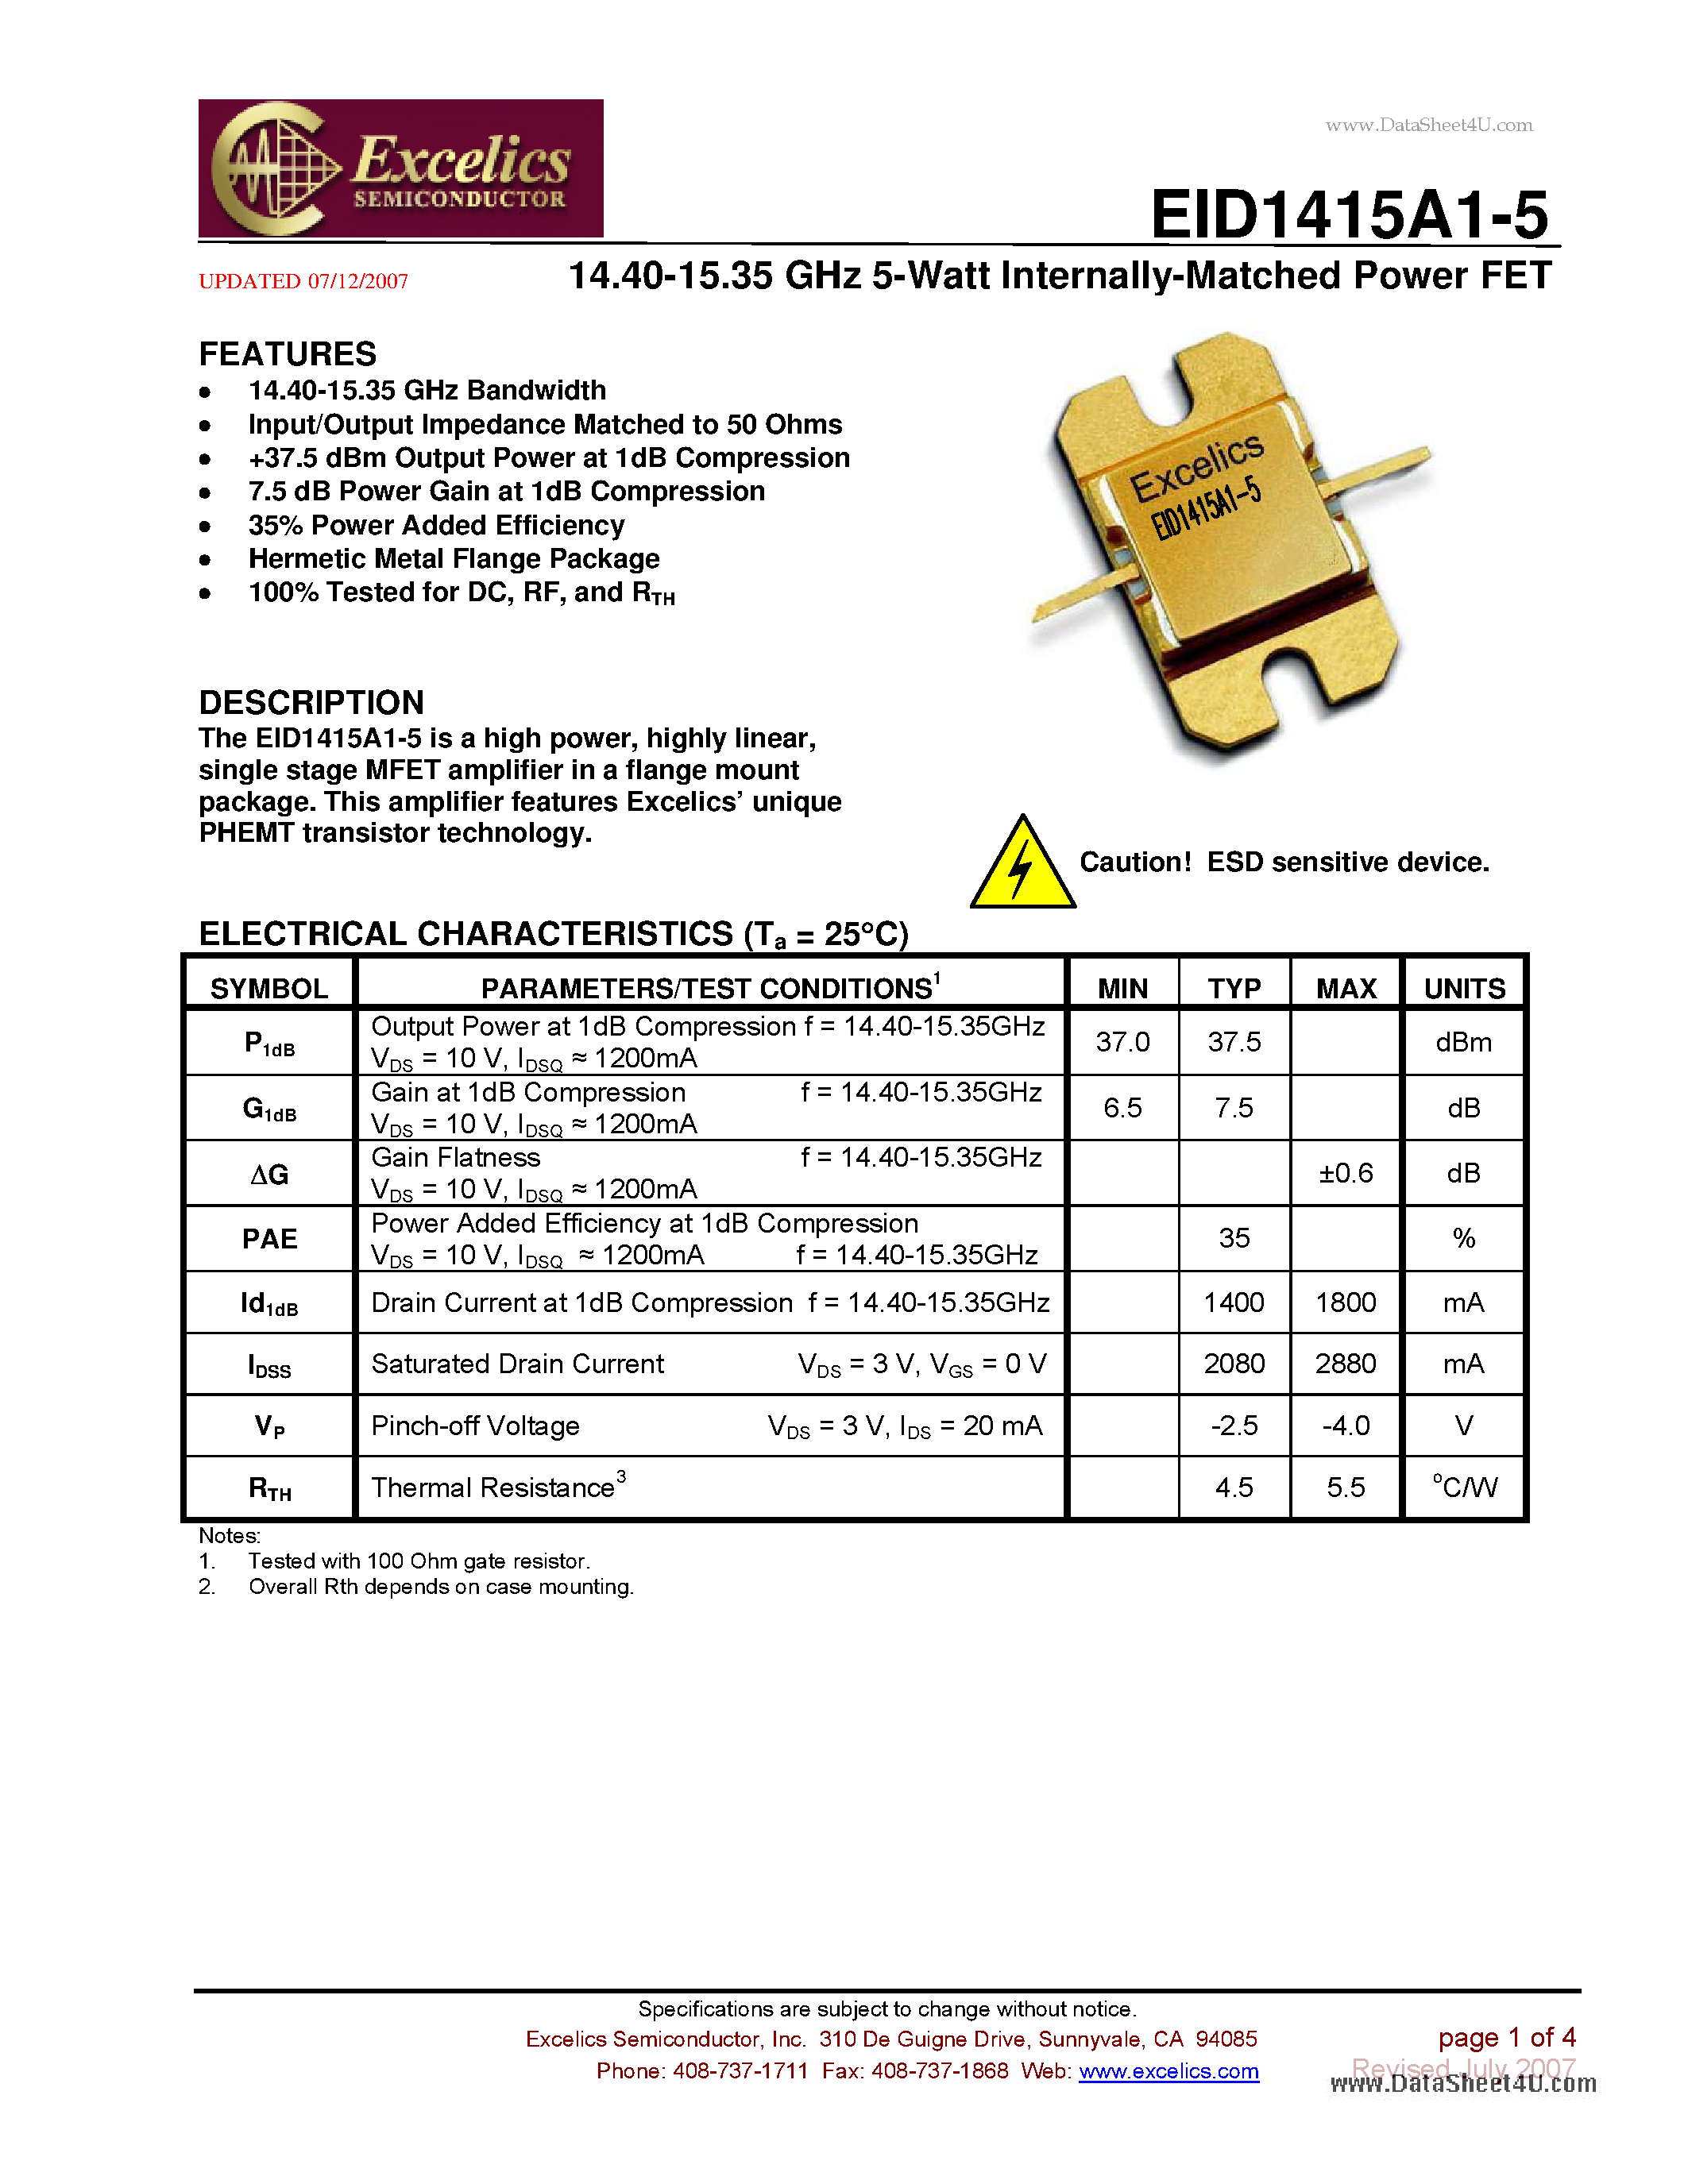 Даташит EID1415A1-5 - 14.40-15.35 GHz 5-Watt Internally-Matched Power FET страница 1